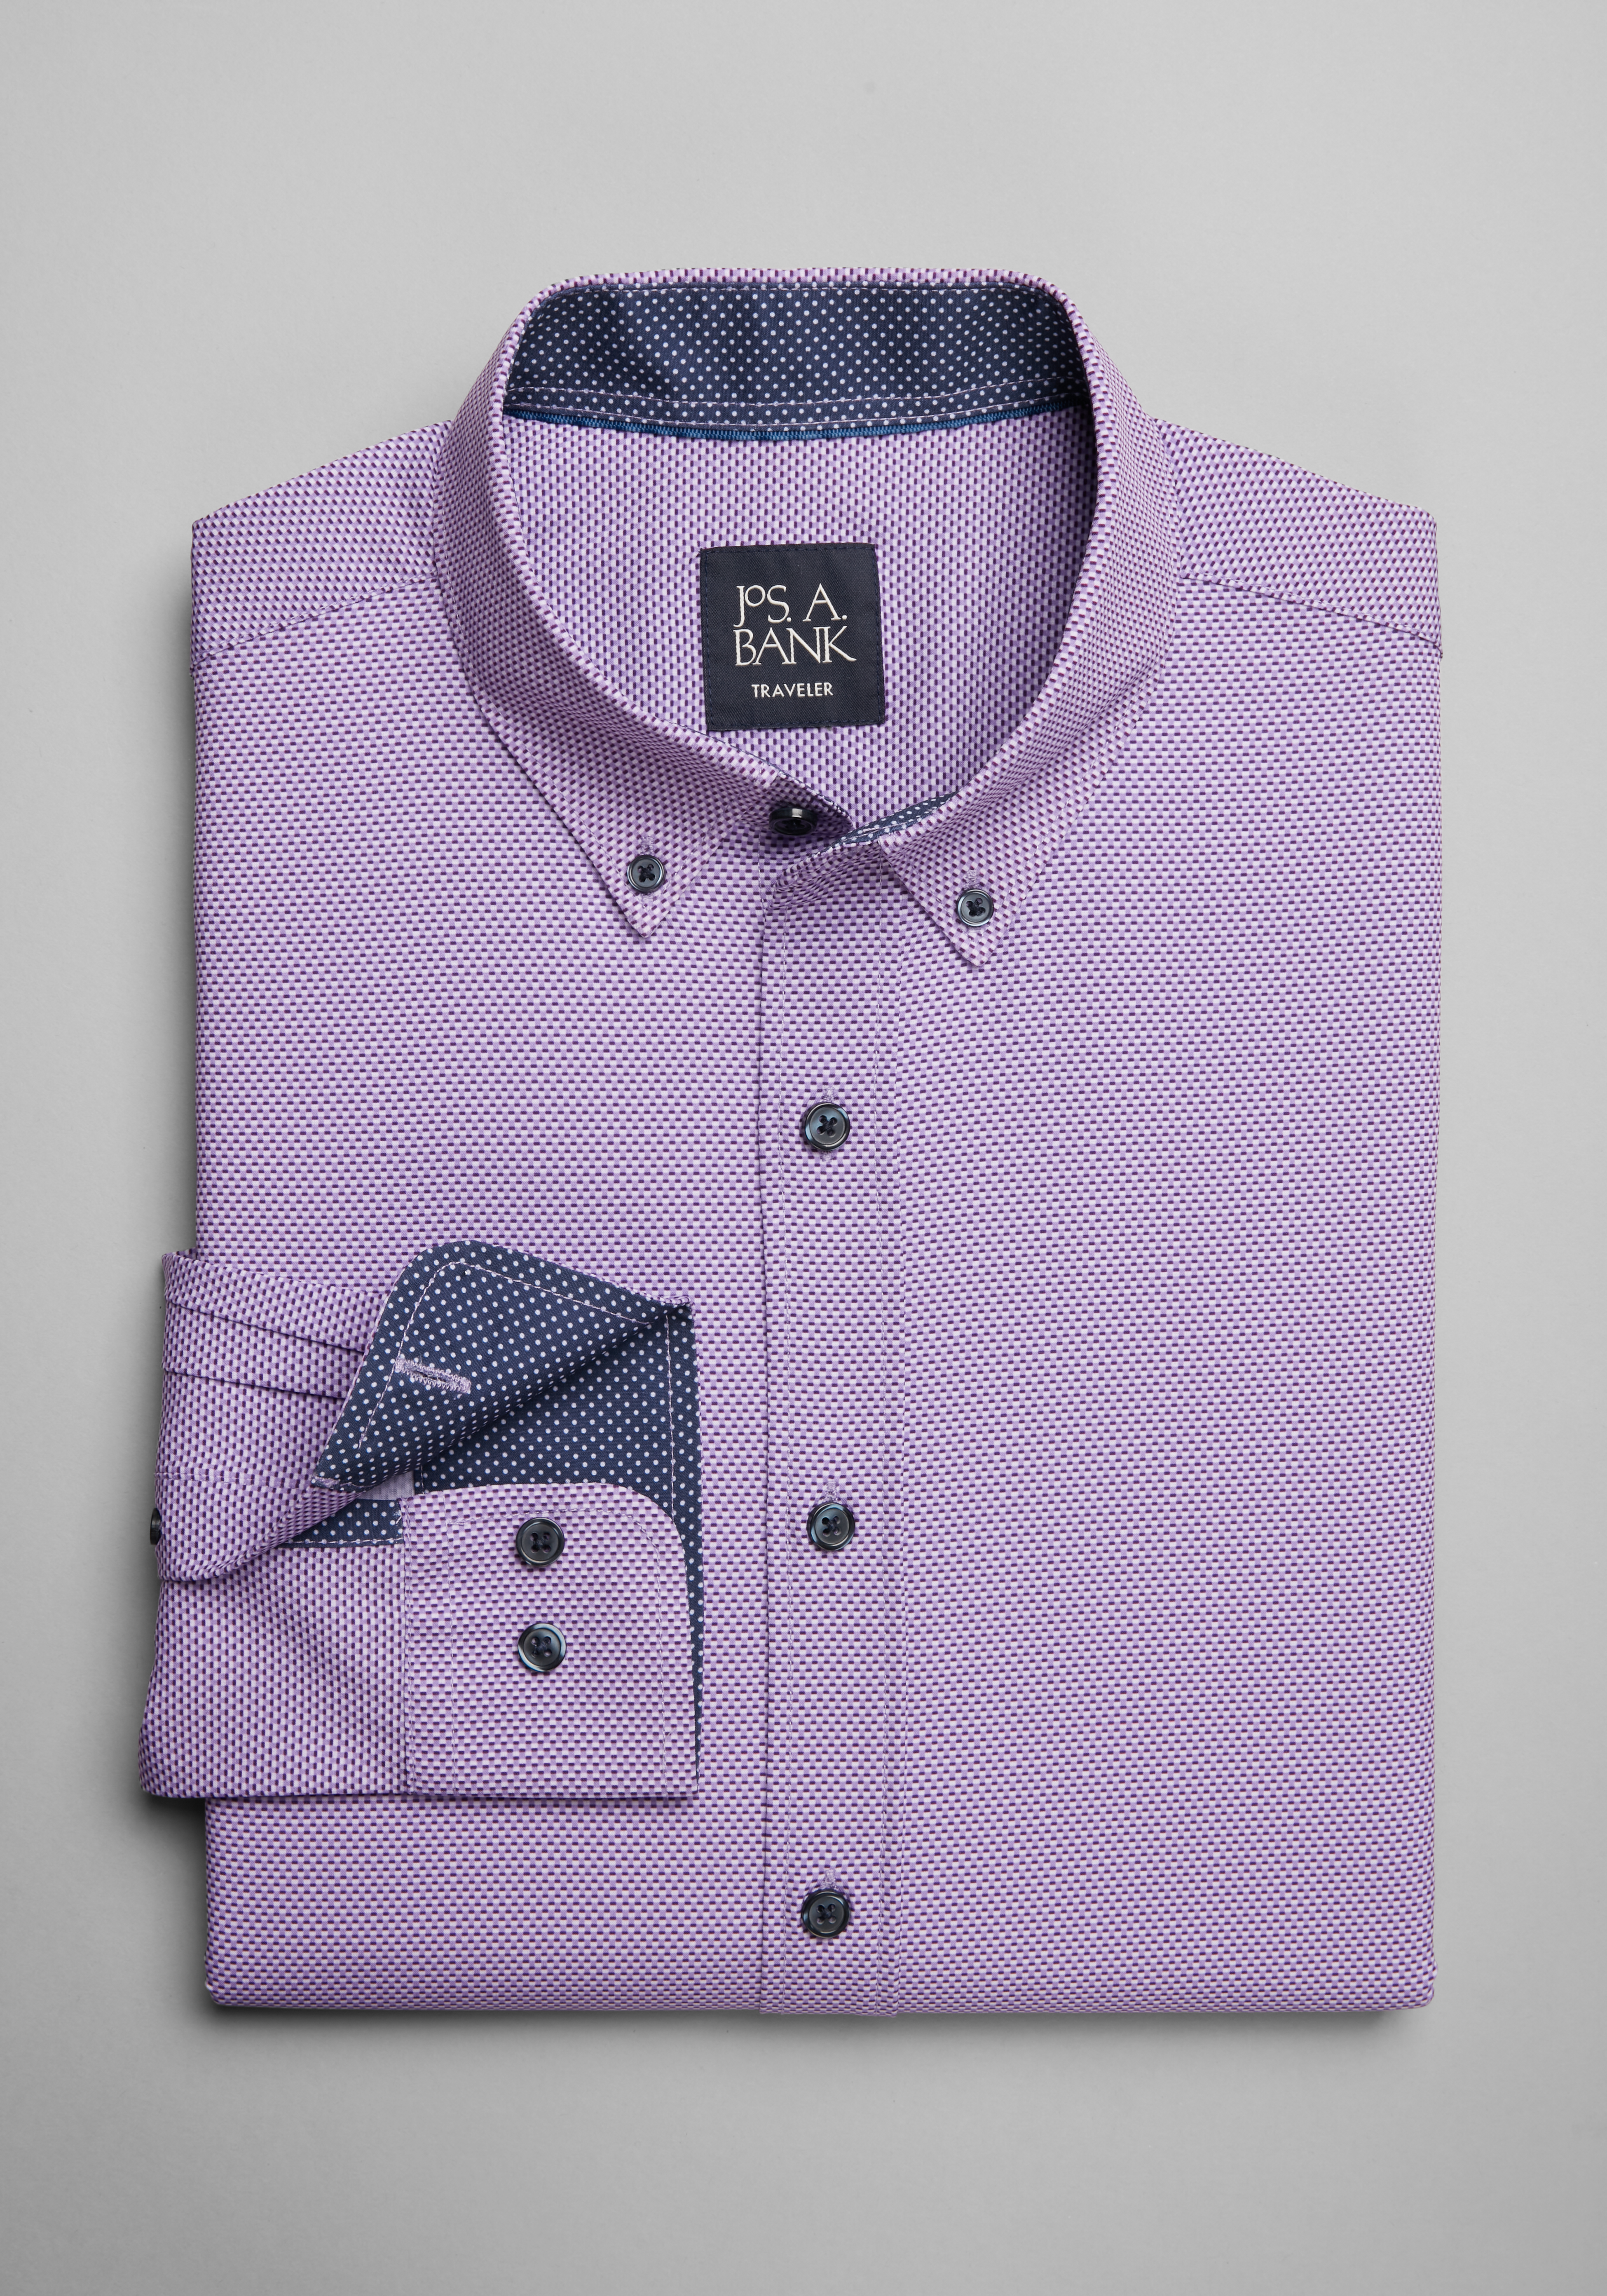 3/8 4-Hole Grape Dress Shirt Buttons